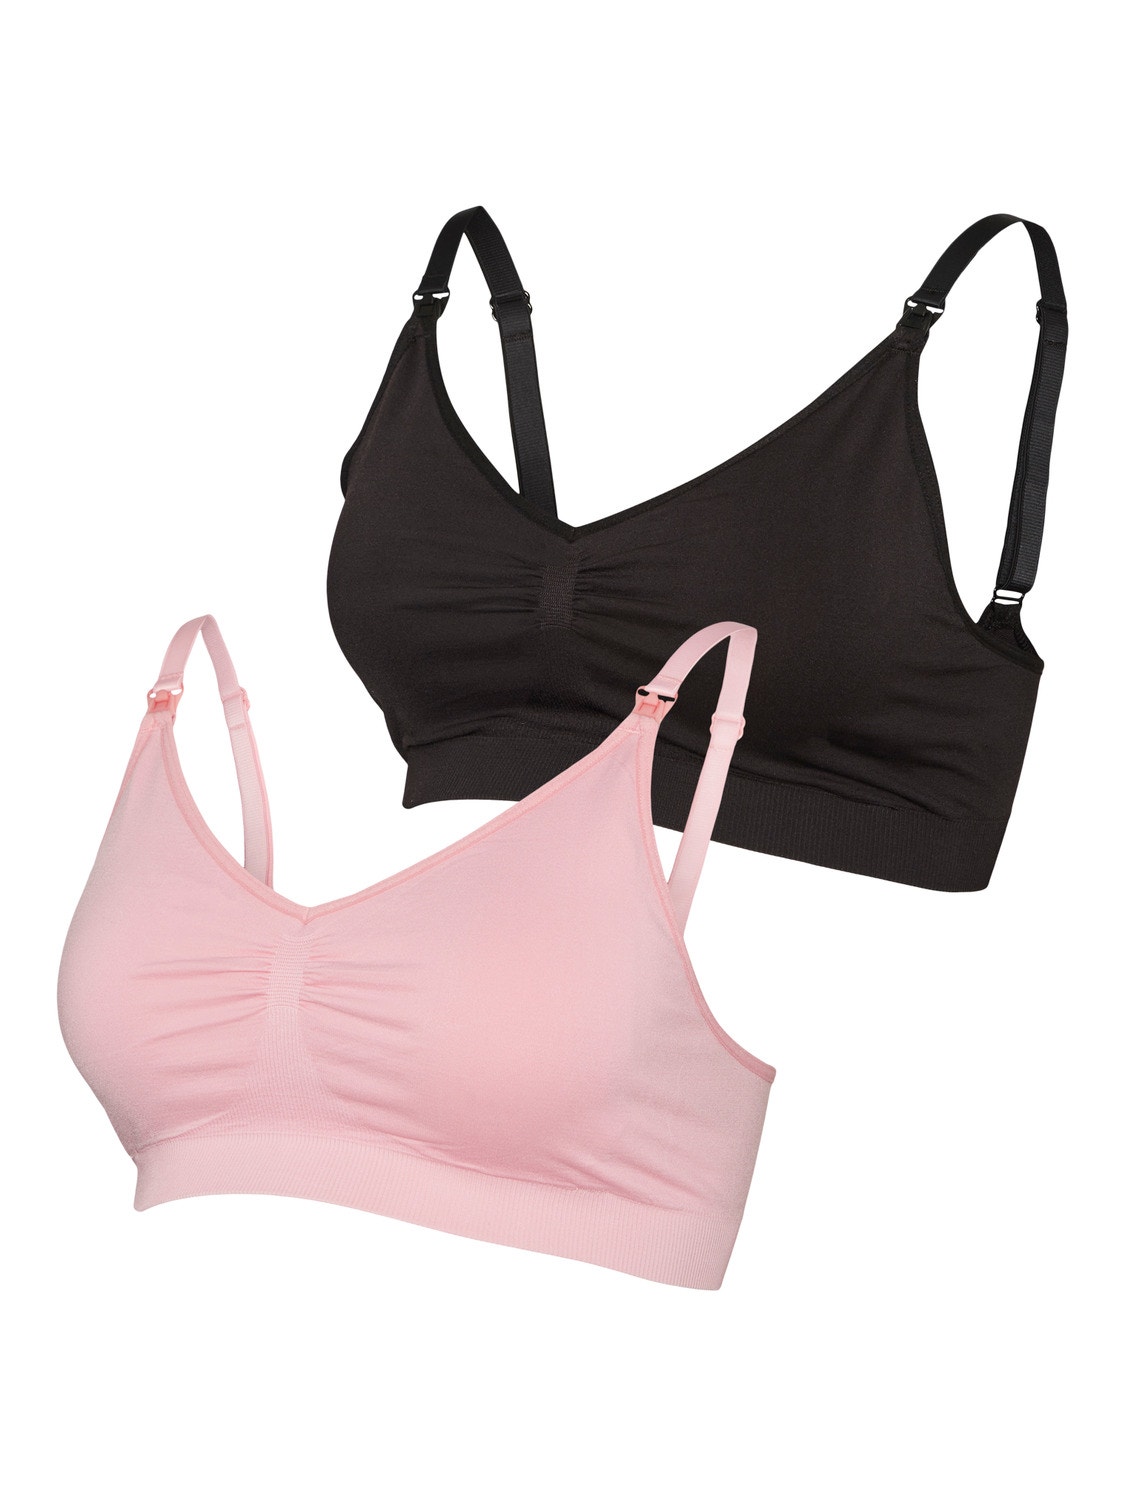 MAMA 2-pack seamless nursing bras - Grey-green/Light pink - Ladies